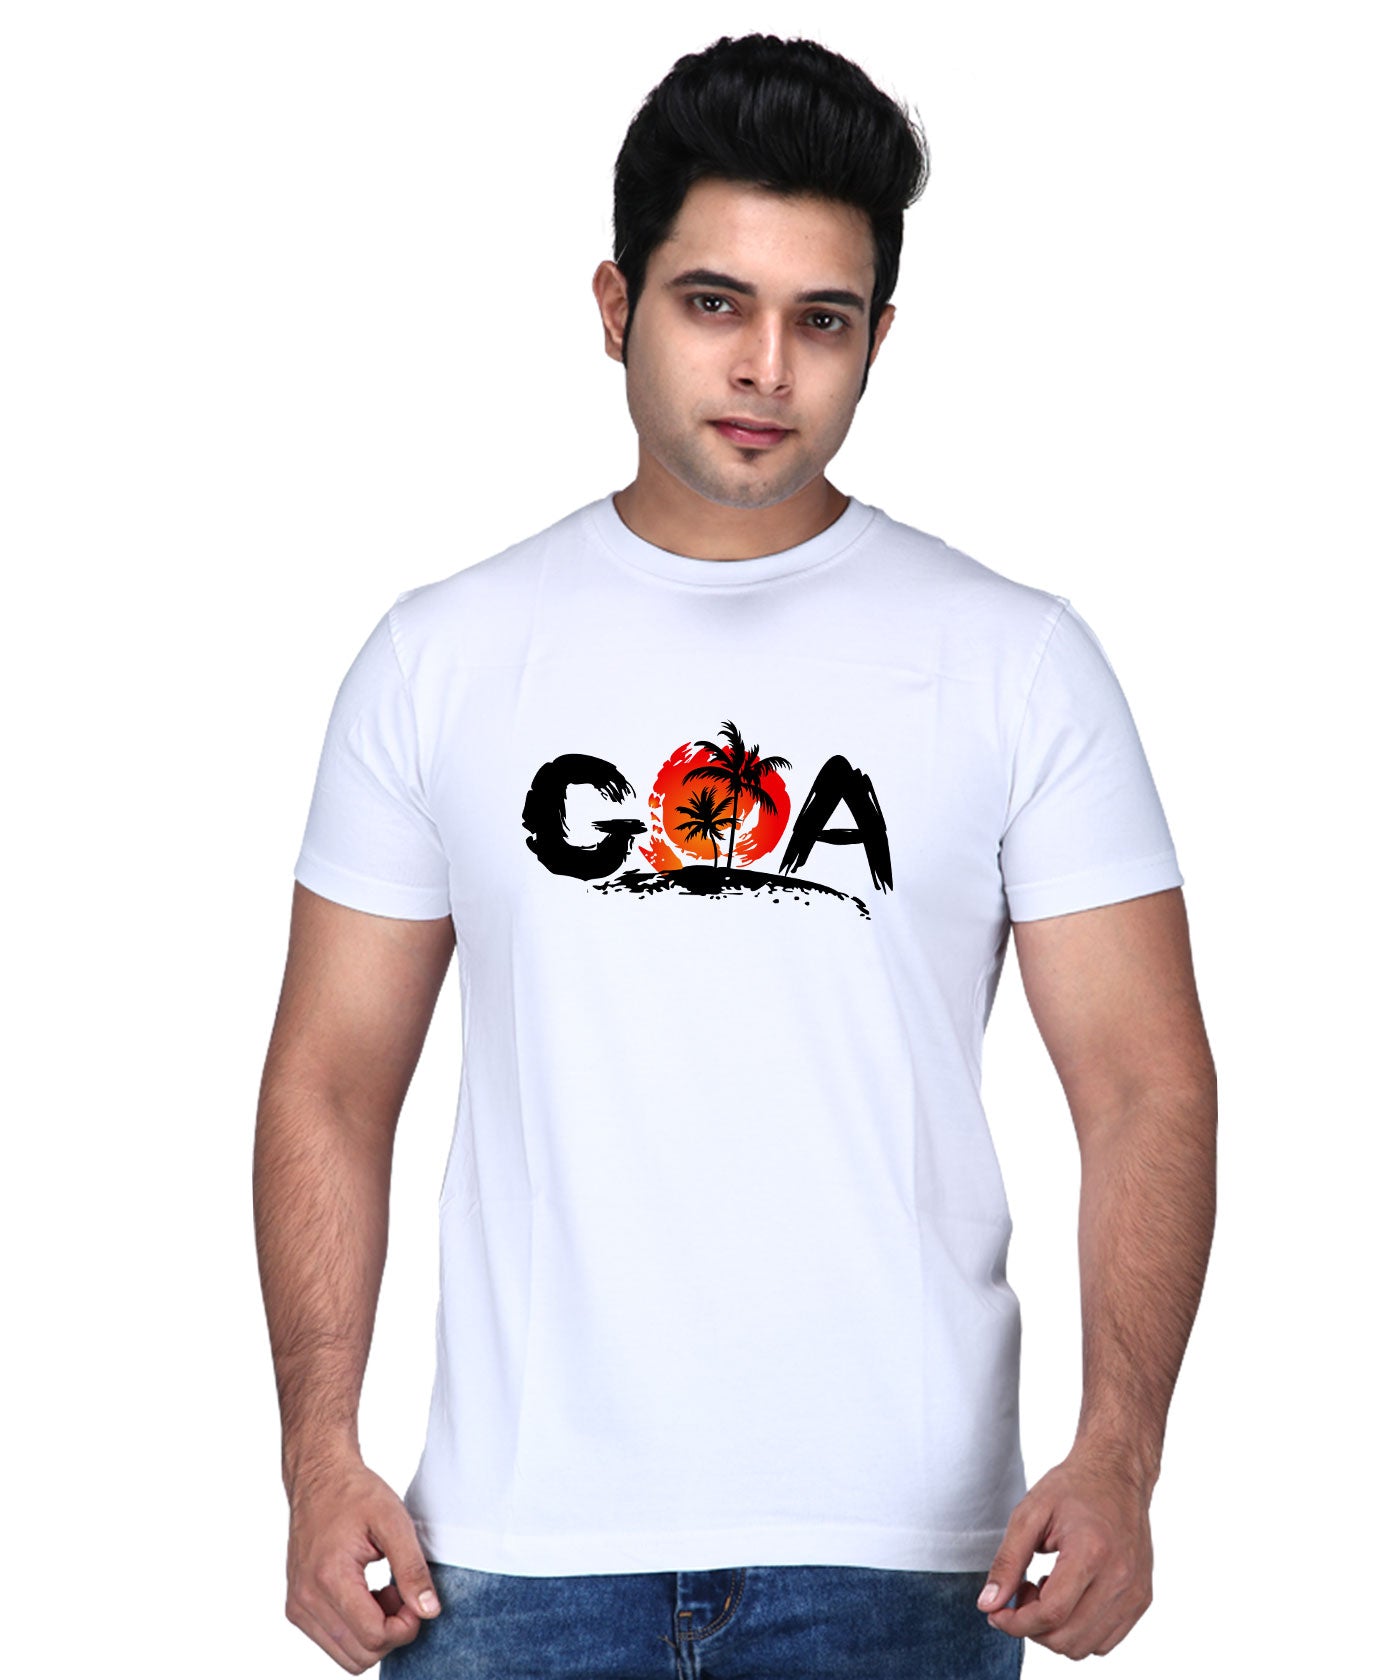 Goa - Premium Round Neck Cotton Tees for Men - White